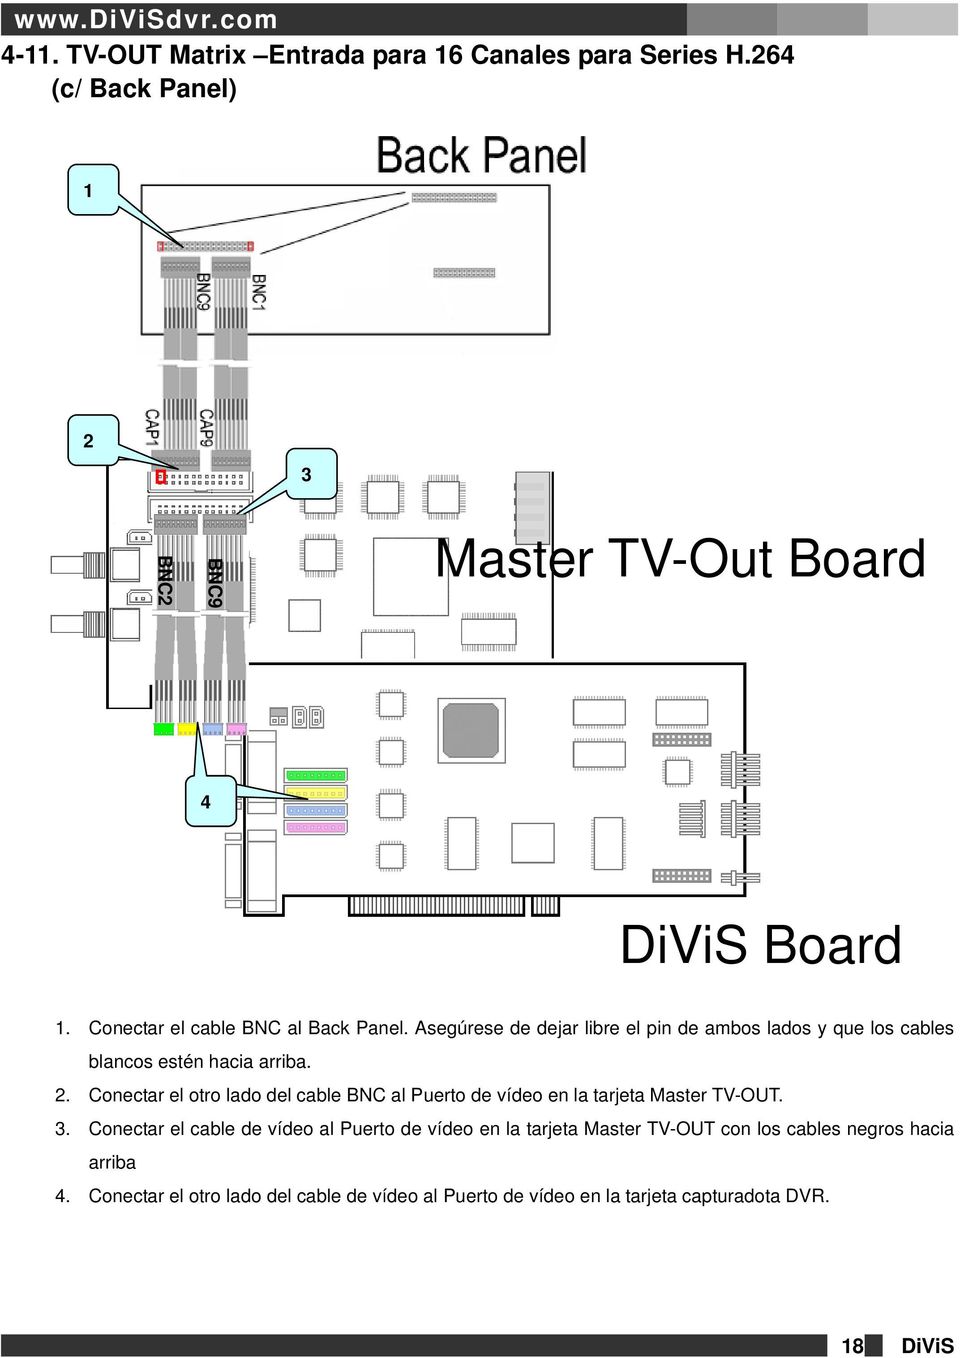 Conectar el otro lado del cable BNC al Puerto de vídeo en la tarjeta Master TV-OUT. 3.